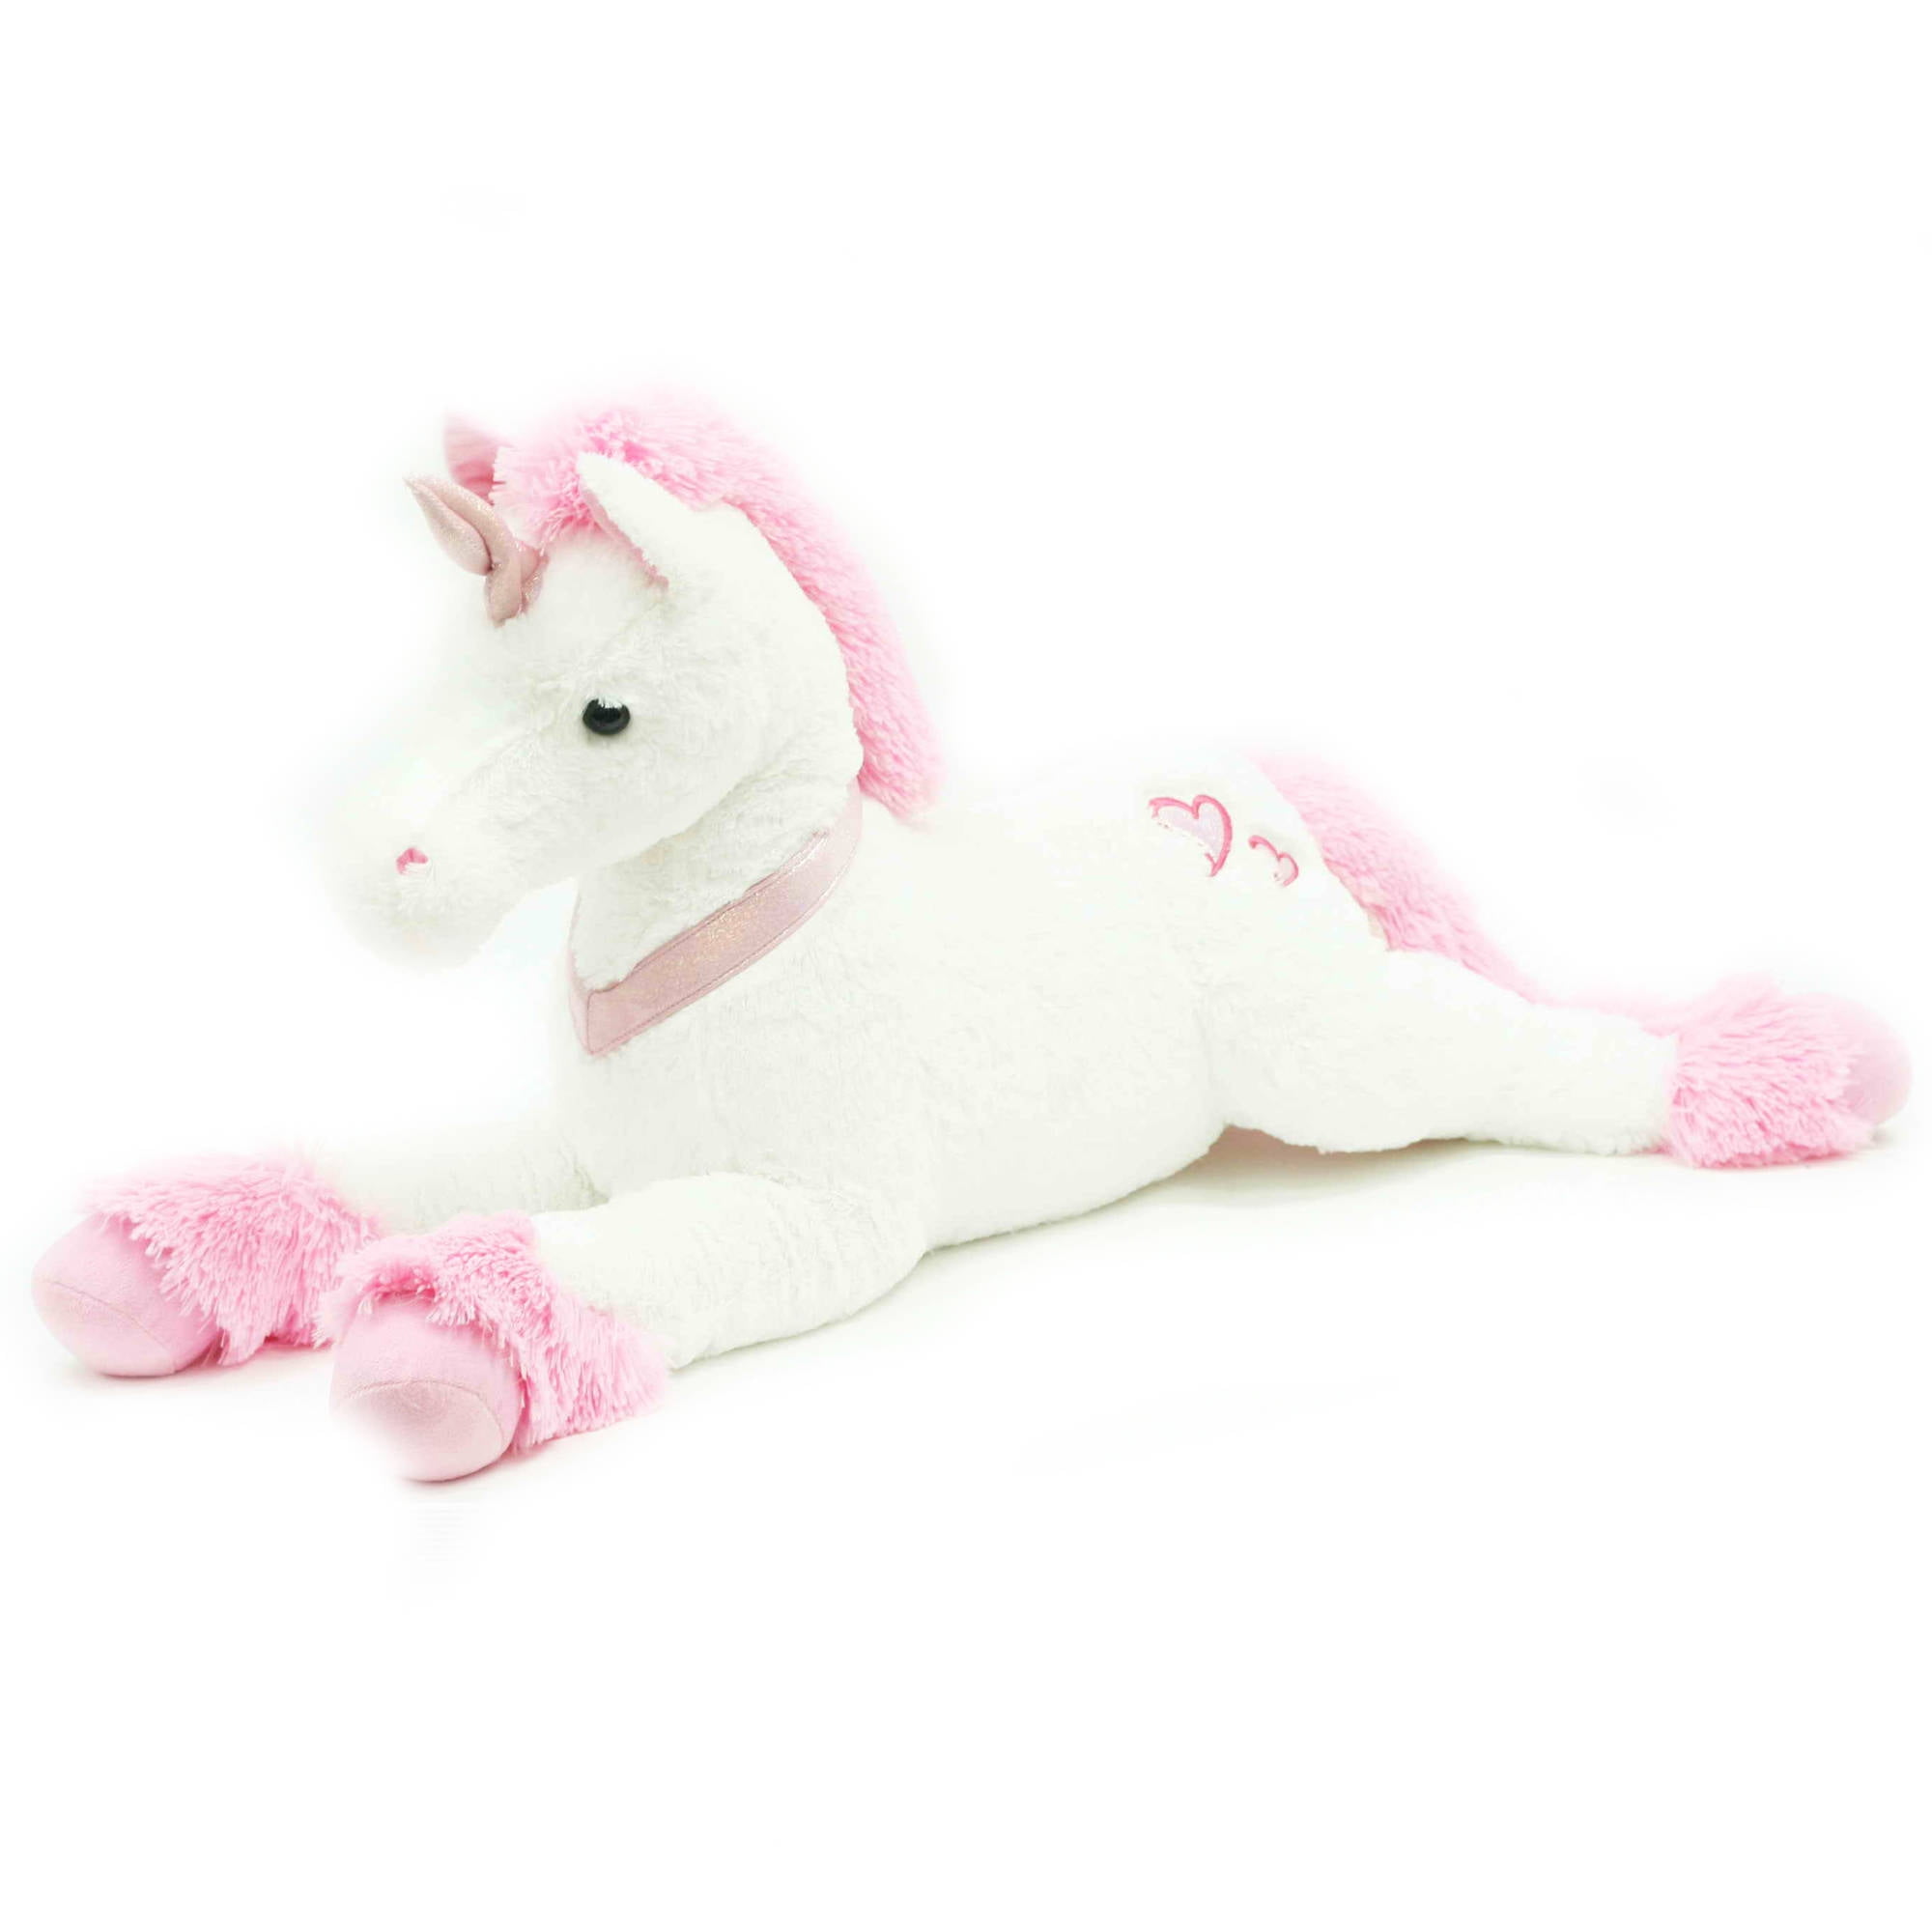 jumbo unicorn stuffed animal walmart